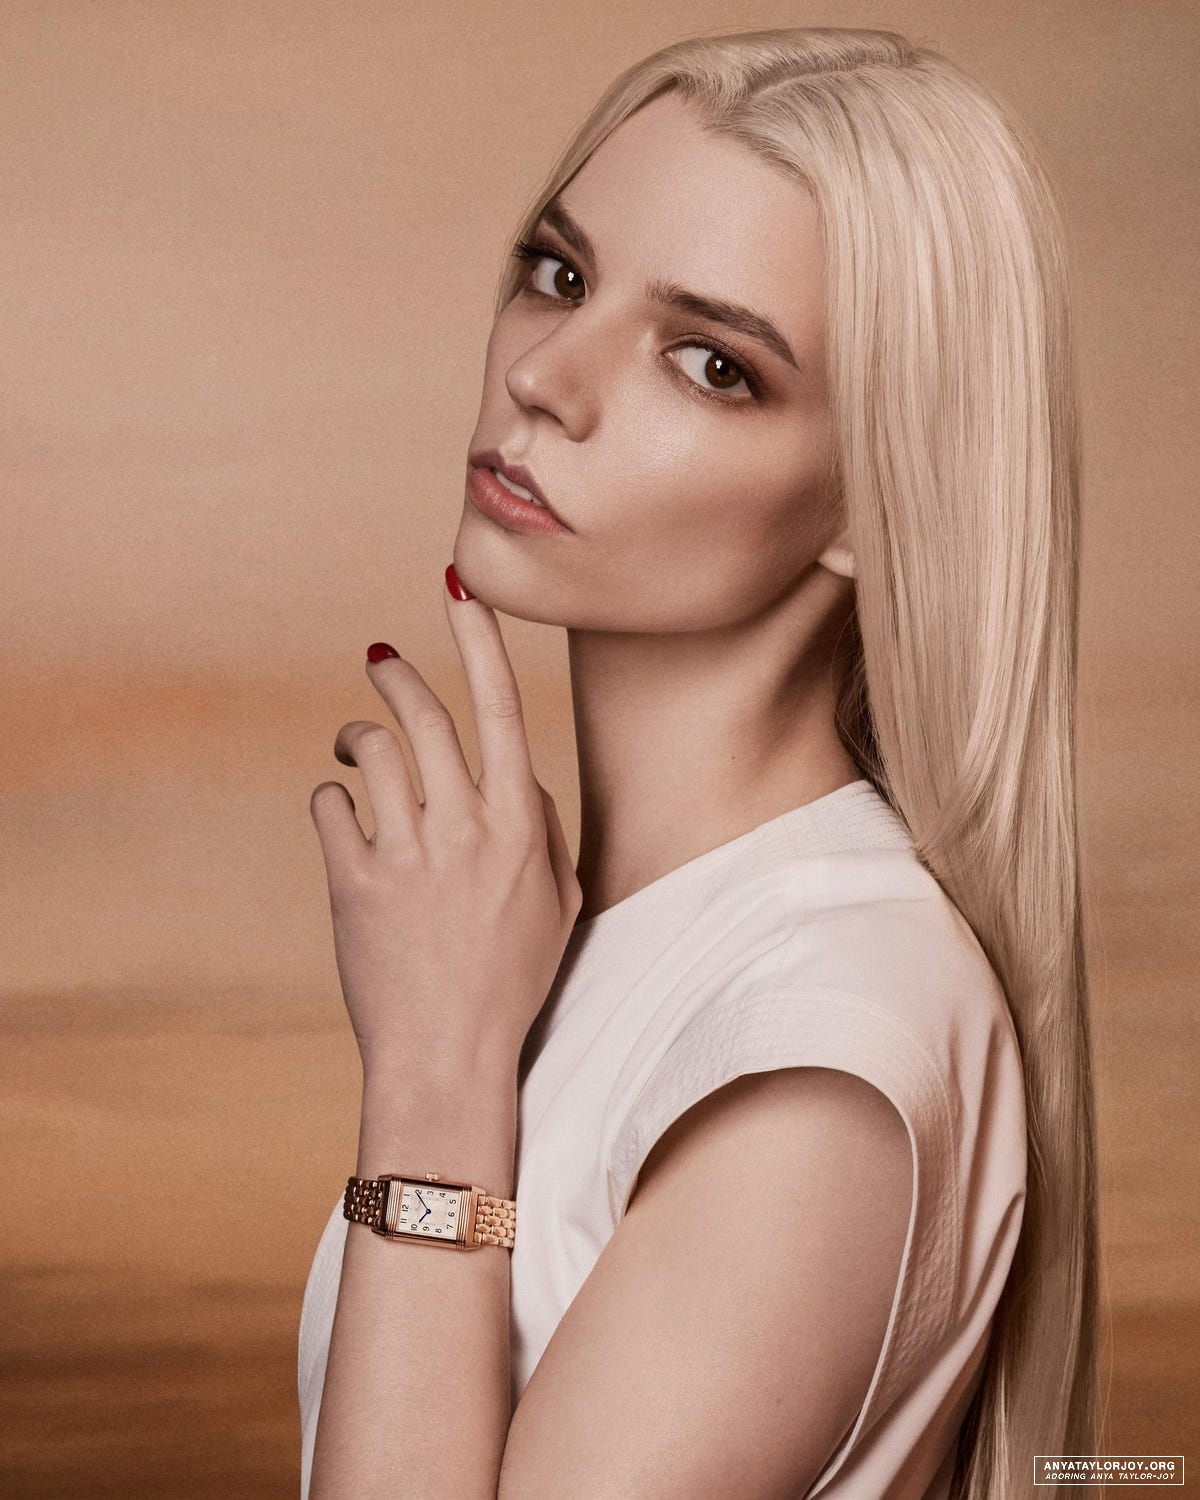 Anya Taylor Joy Women Blonde Actress Long Hair Painted Nails 1200x1500